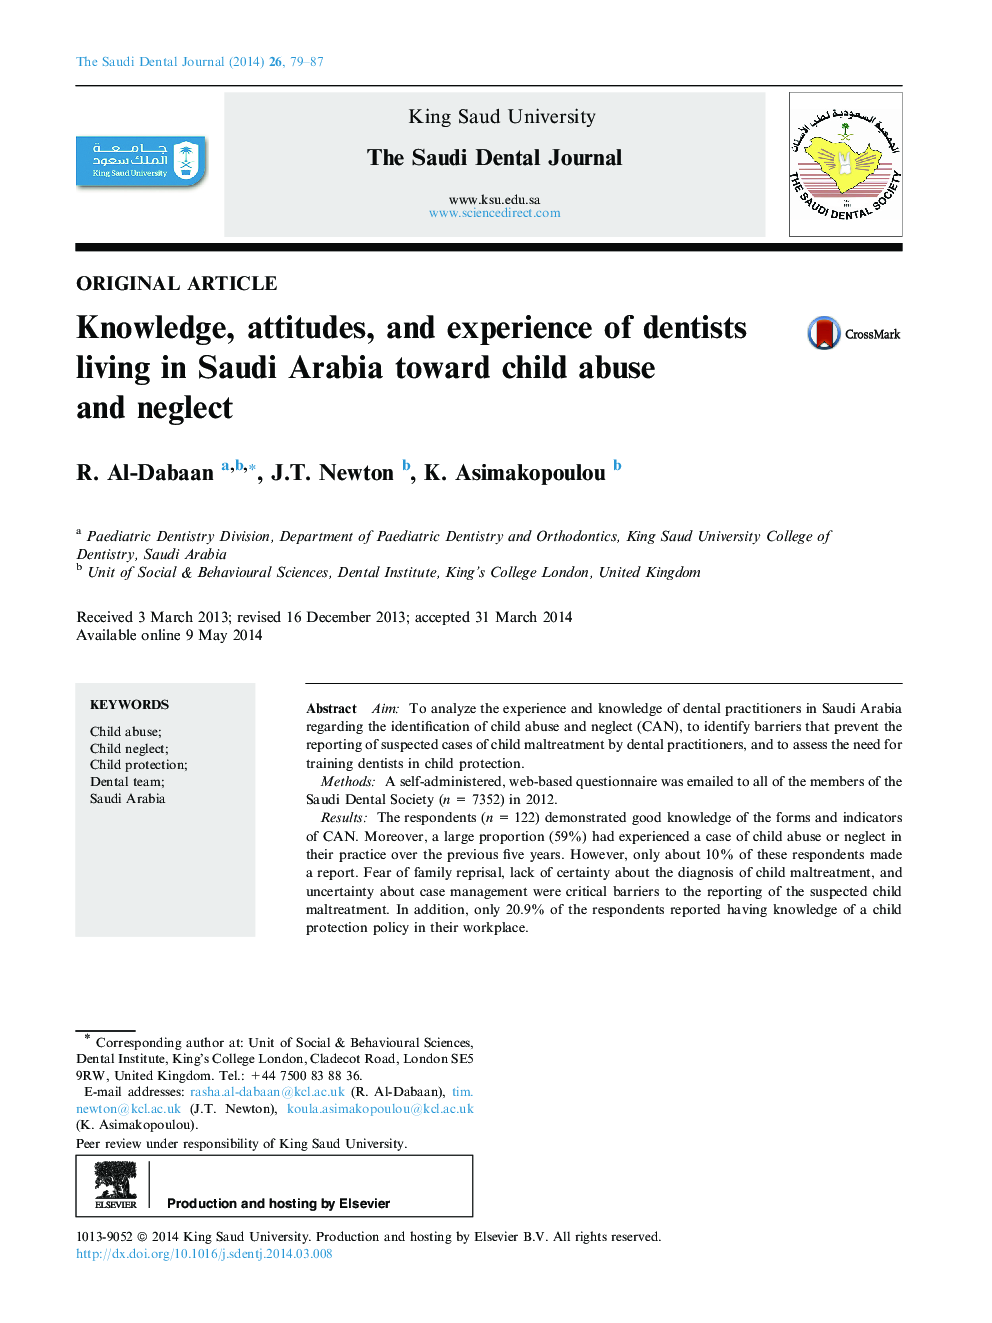 دانش، نگرش و تجربه دندانپزشکان ساکن عربستان سعودی در برابر سوء استفاده و غفلت کودکان 